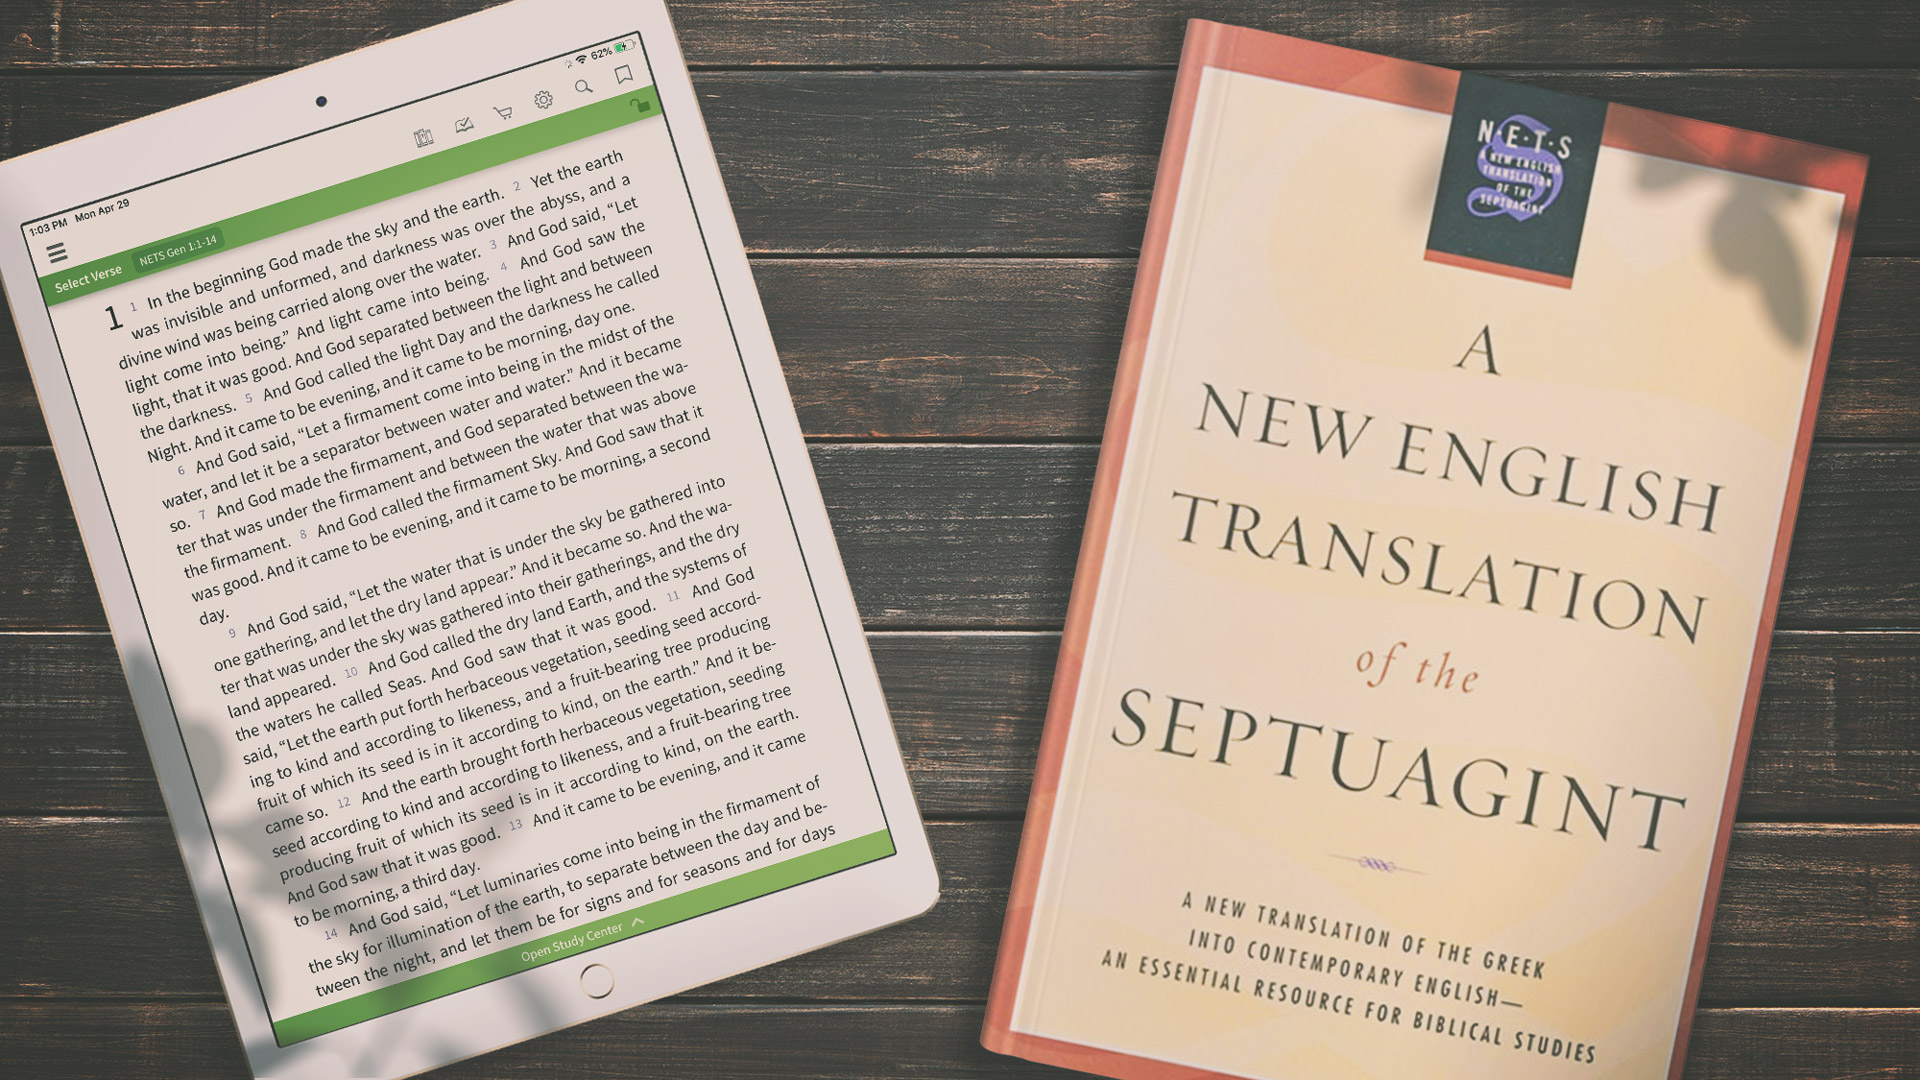 New English Translation of the Septuagint - Olive Tree Blog